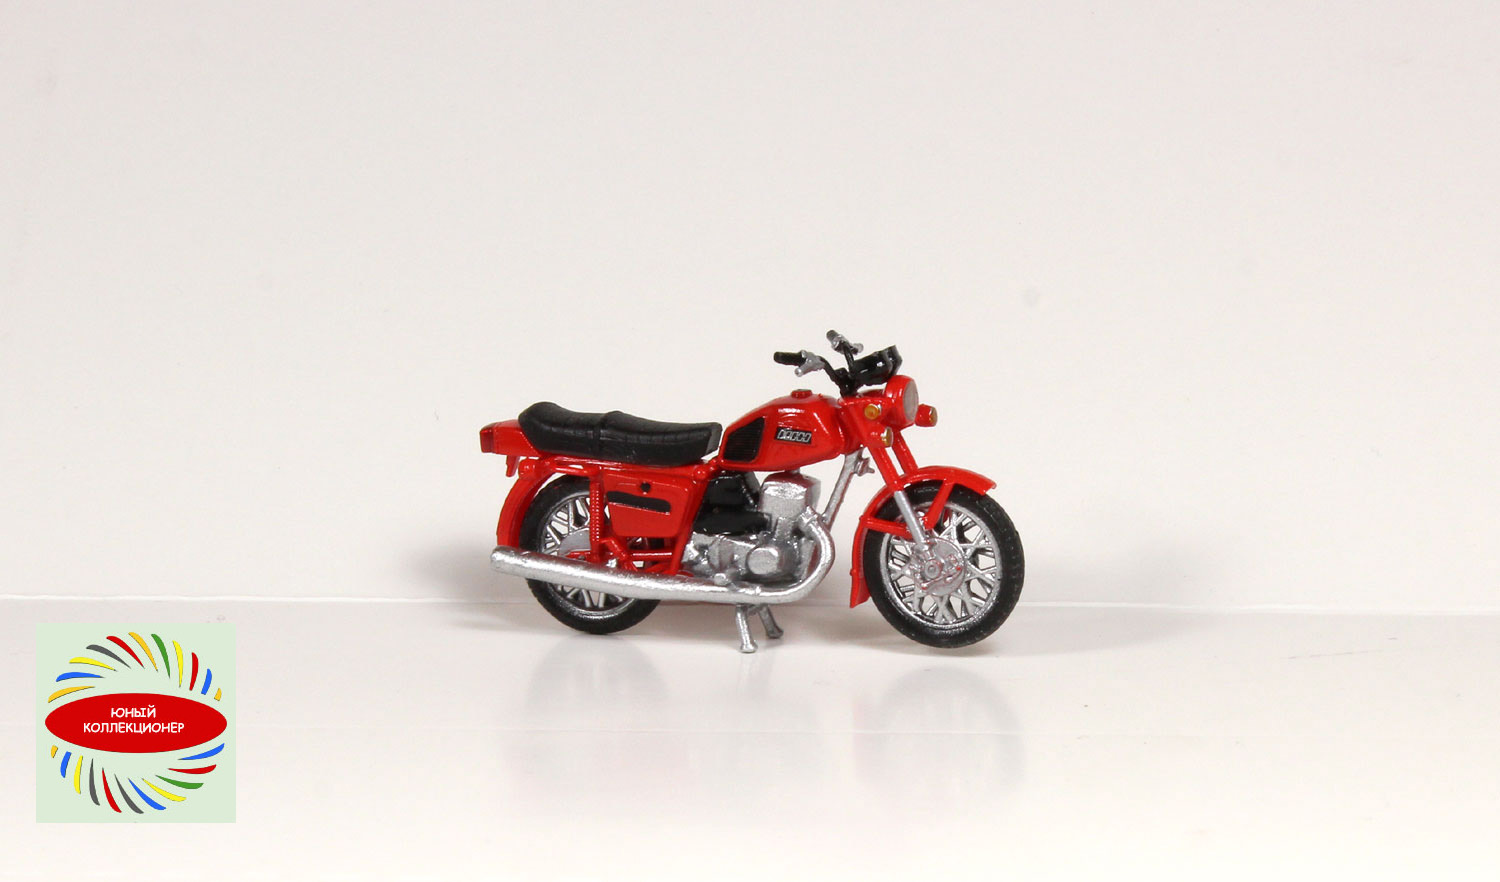 Планета-5 мотоцикл (красный), Юный коллекционер модель в масштабе 1:43 фото 1